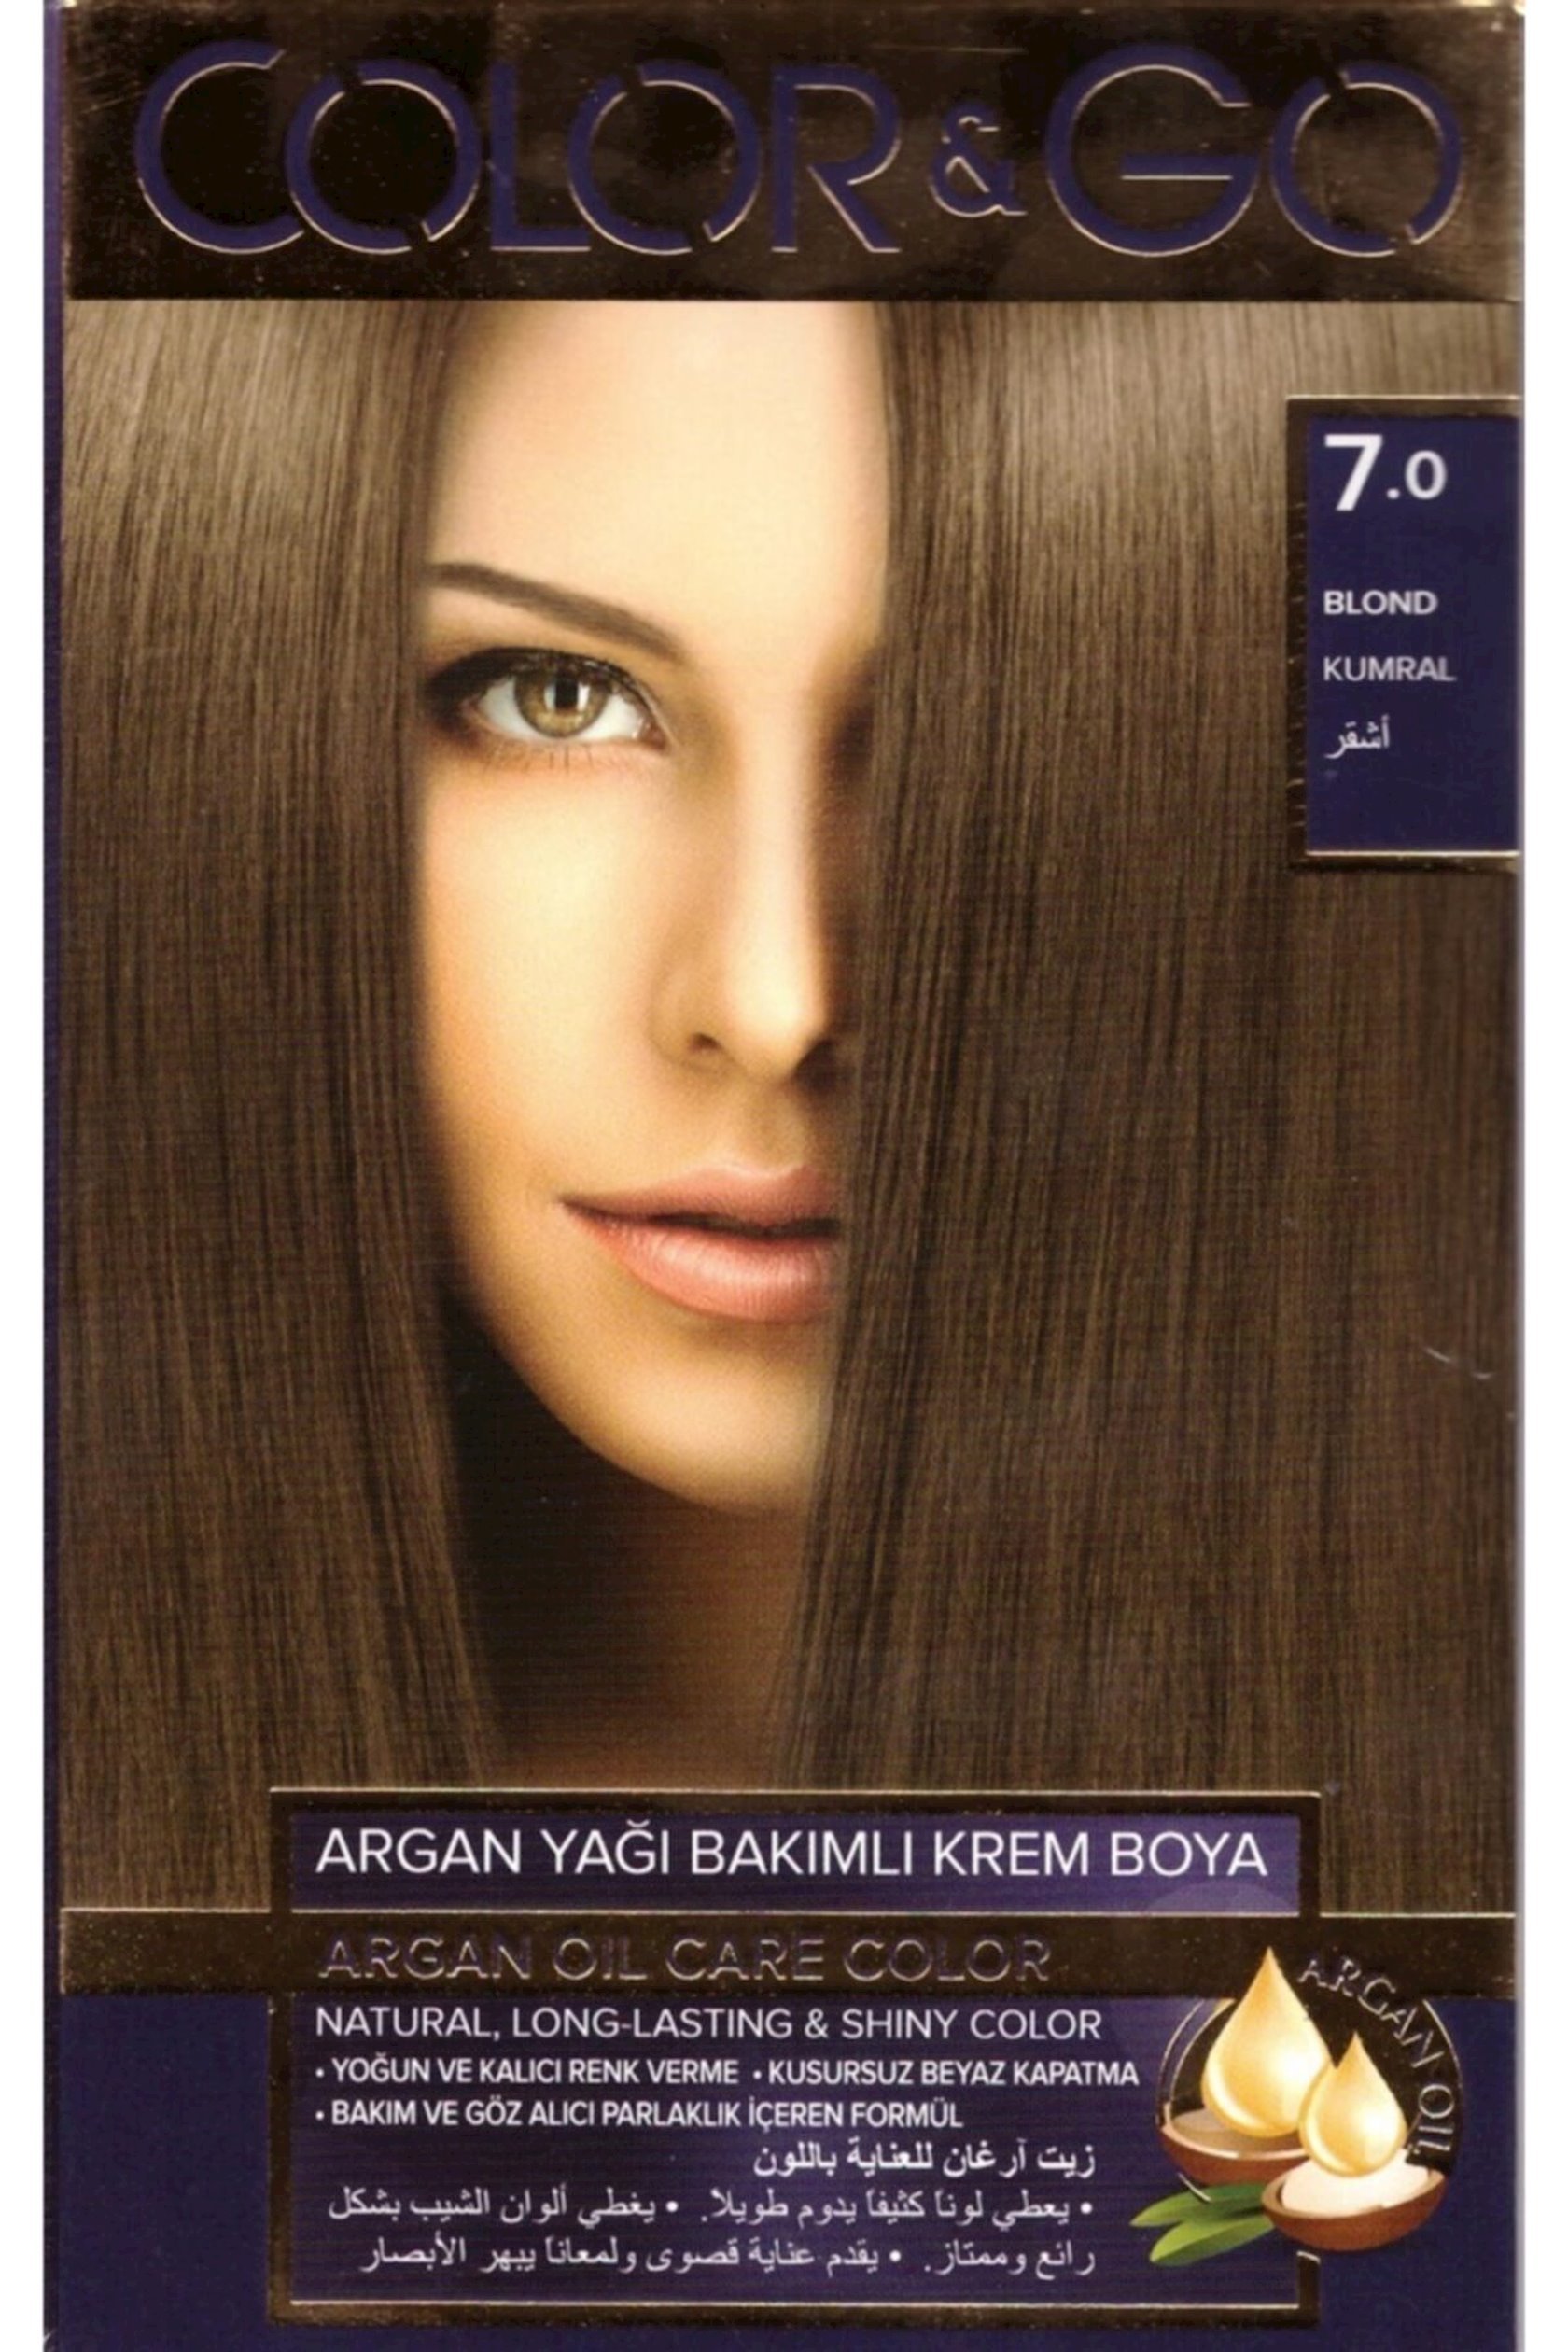 Краска для волос Color&Go 8.8 - купить в Баку. Цена, обзор, отзывы, продажа